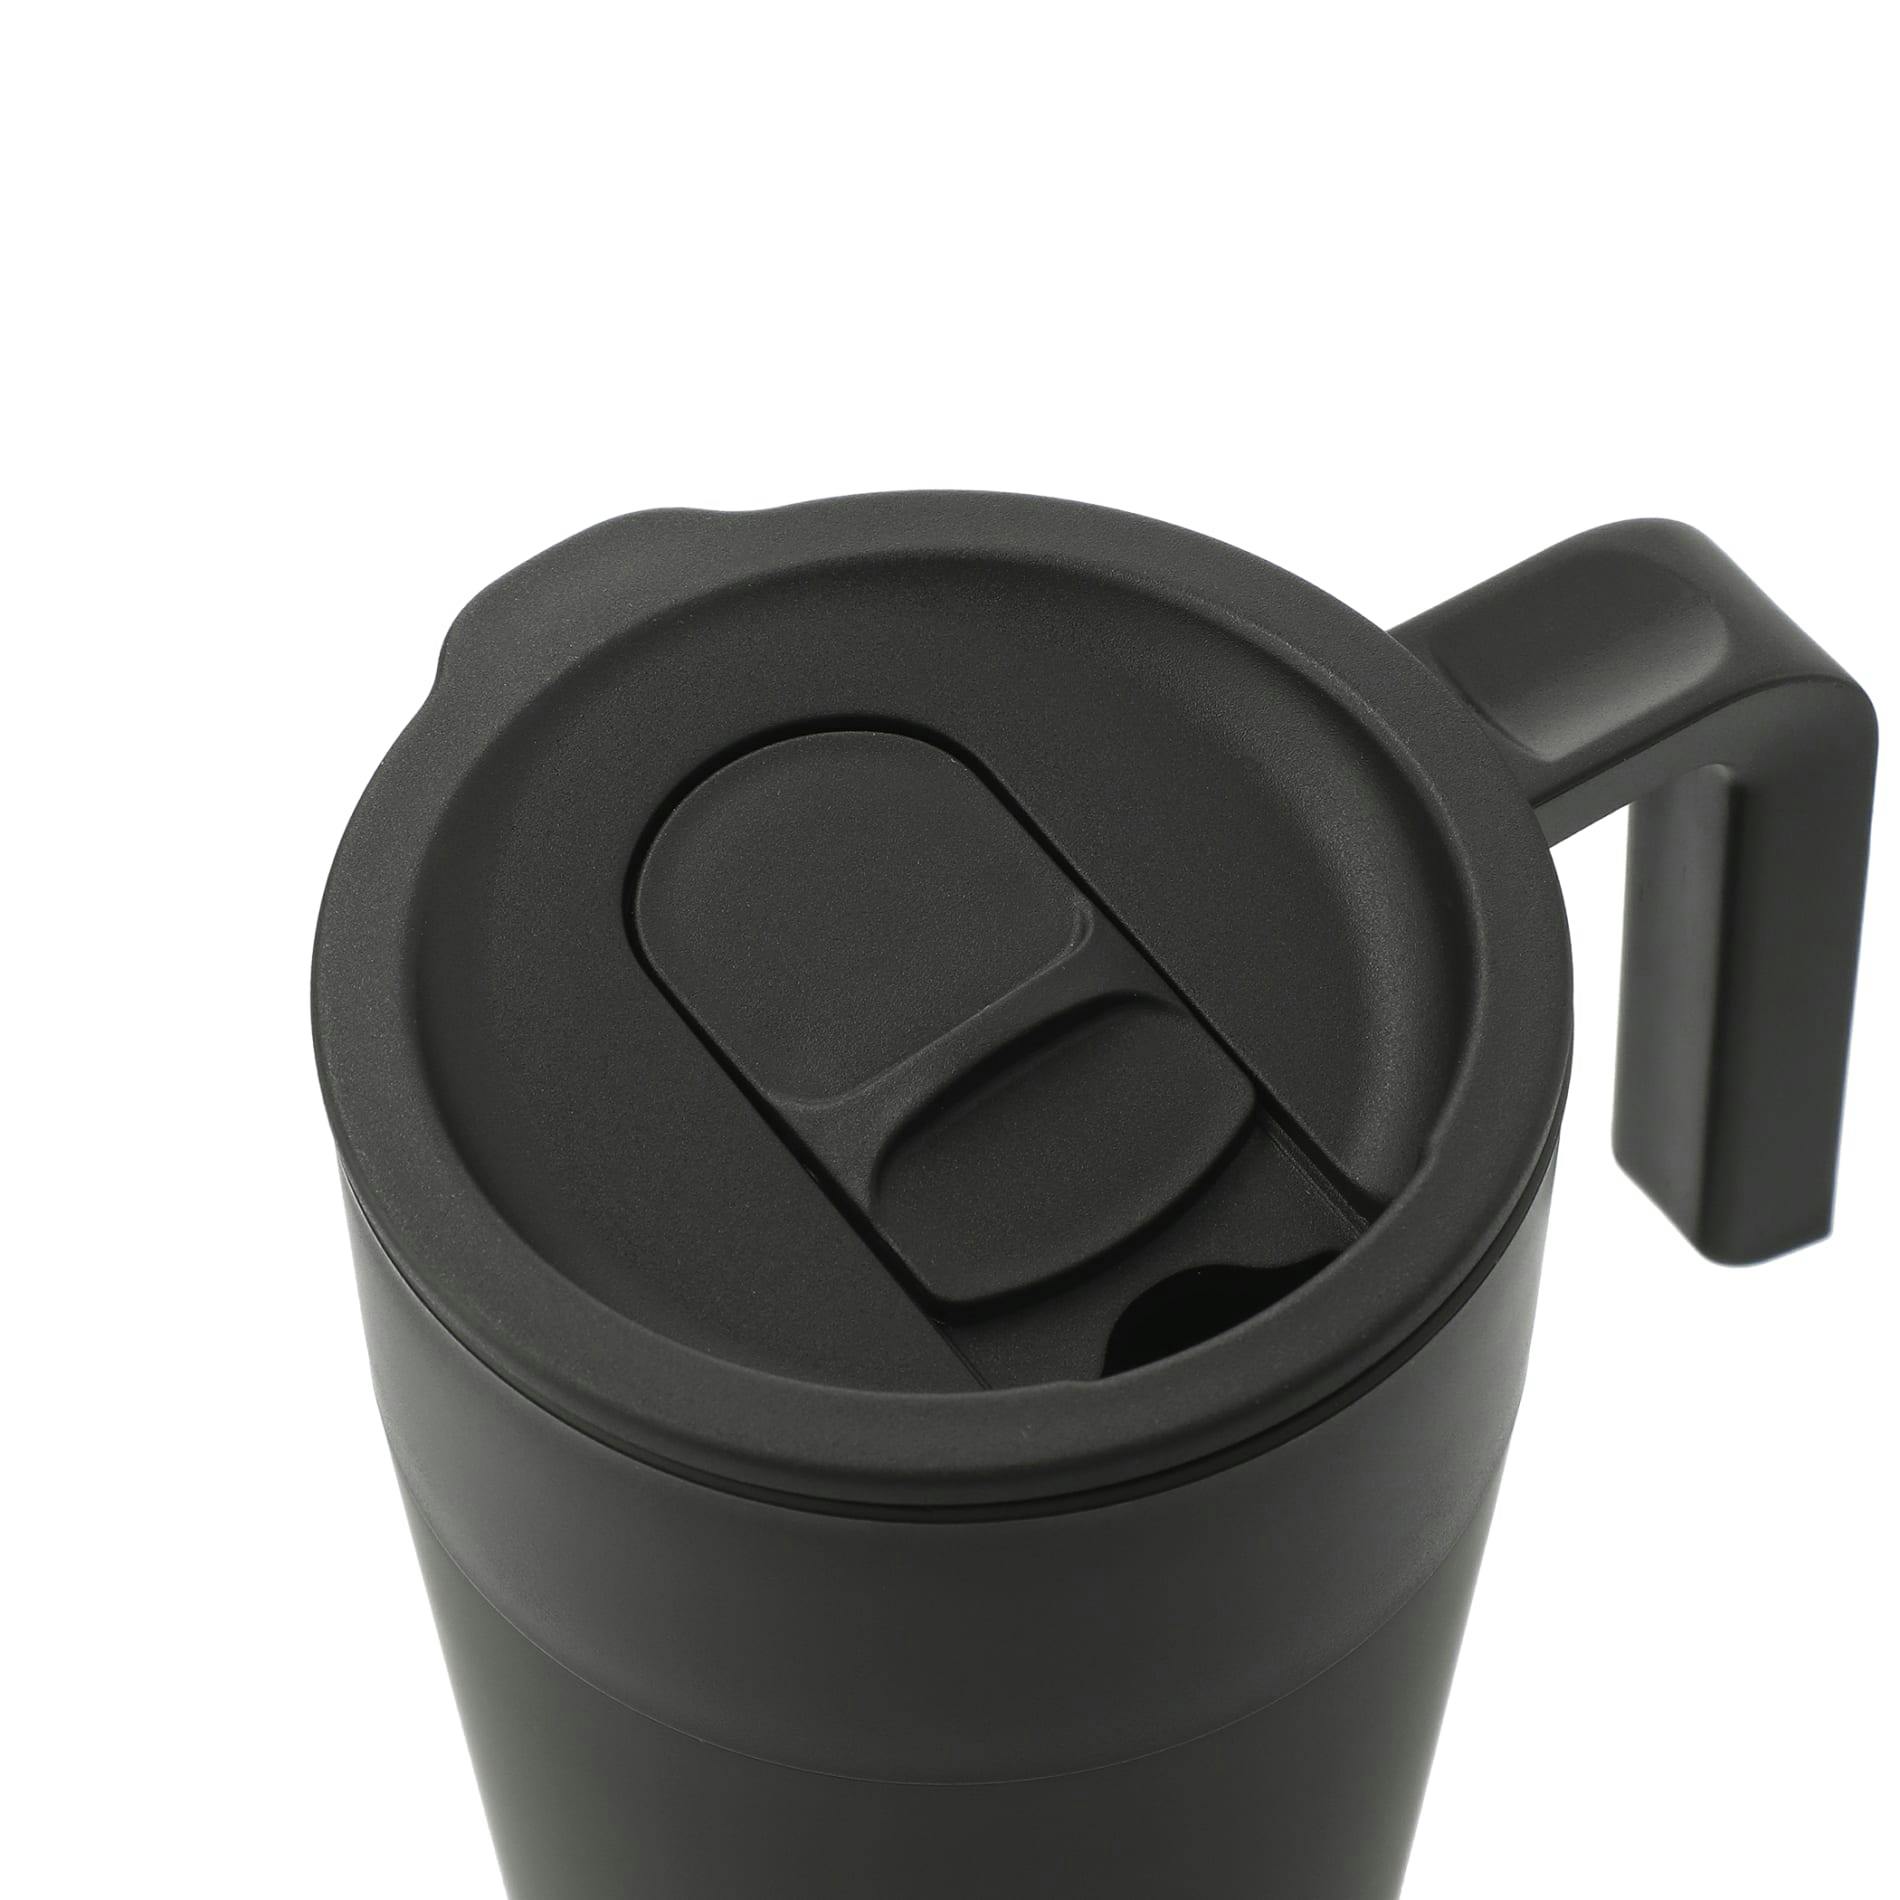 Sigrid 16oz ECO Mug with Recycled Plastic - additional Image 2